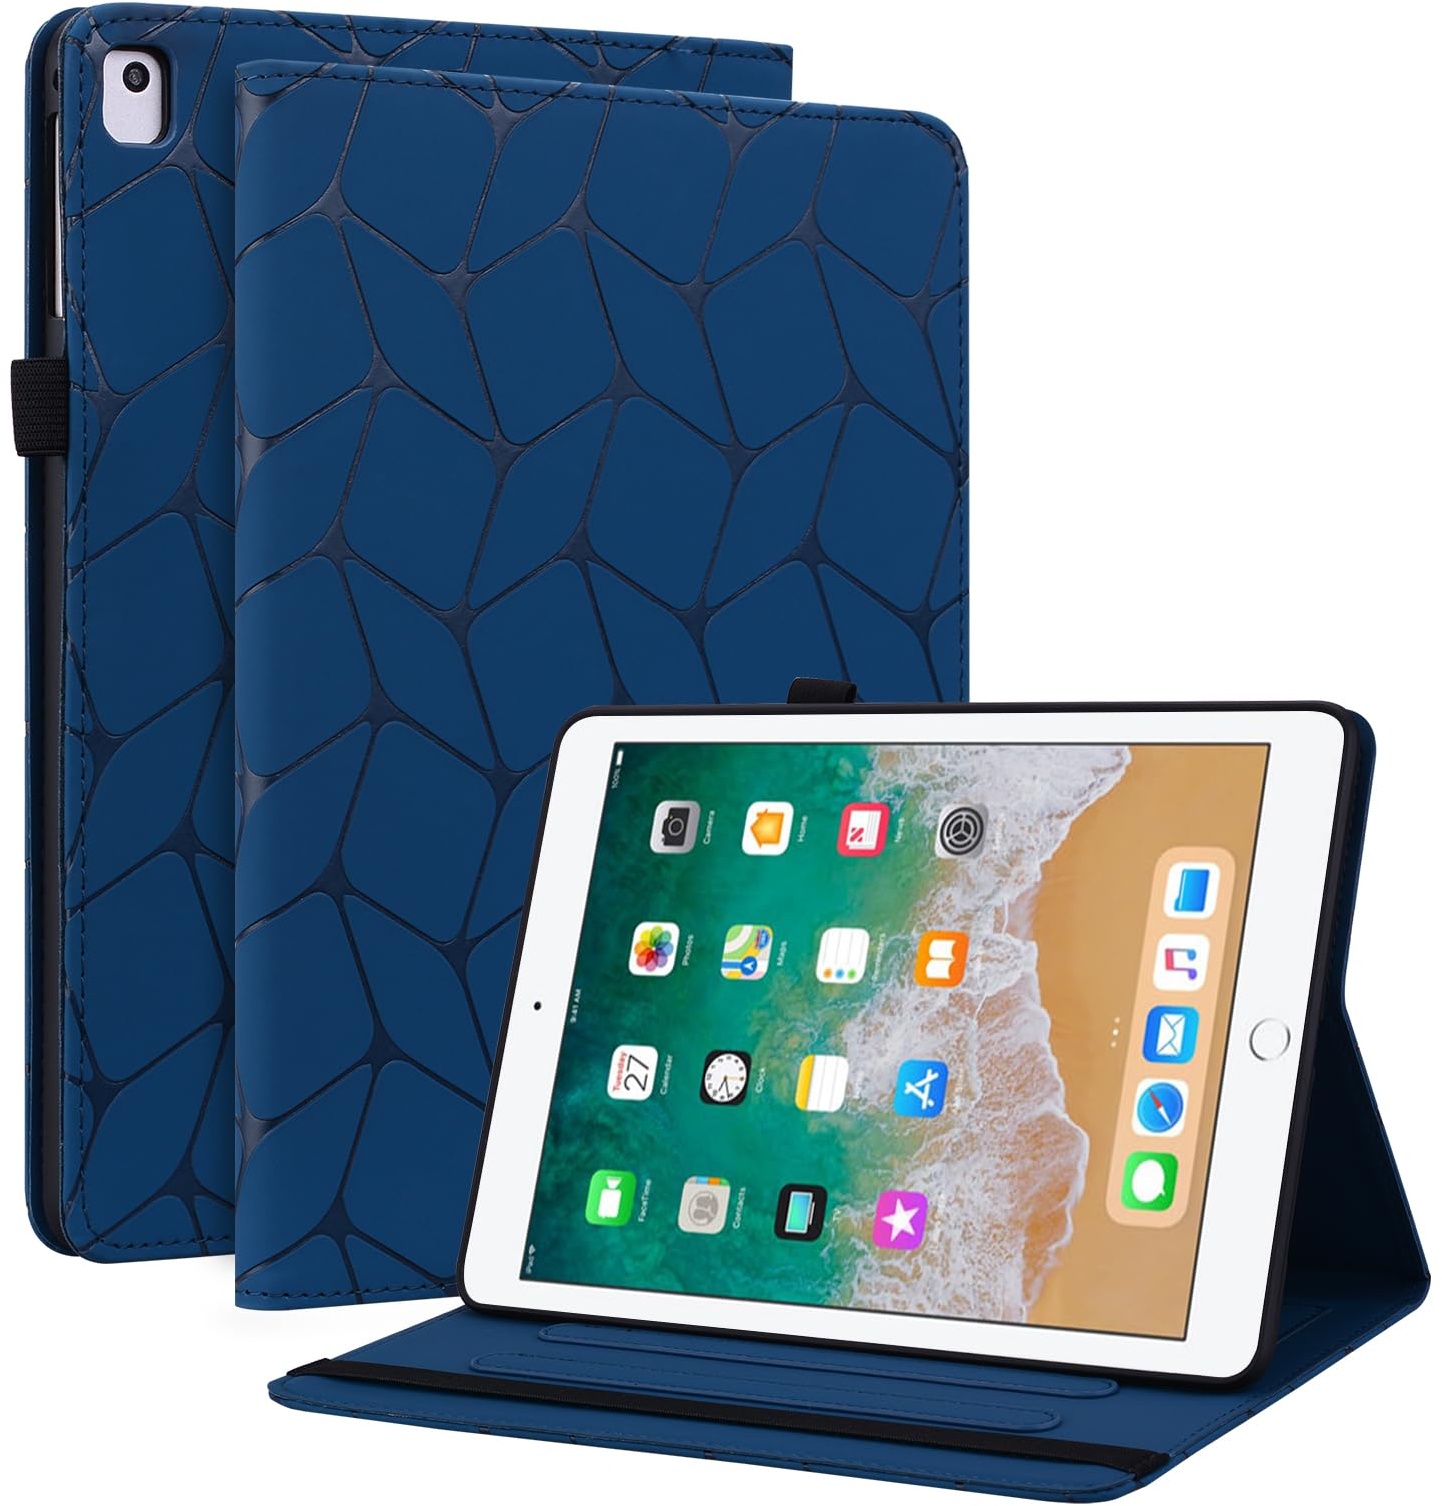 Hülle für iPad 9.7 Zoll 6. Generation 2018/5. Generation 2017,Stoßfest Schutzhülle mit Auto aufwachen/Schlaf Funktion Elastisches Band TabletHülle für iPad Air 2013 & Air 2. 2014 Blau